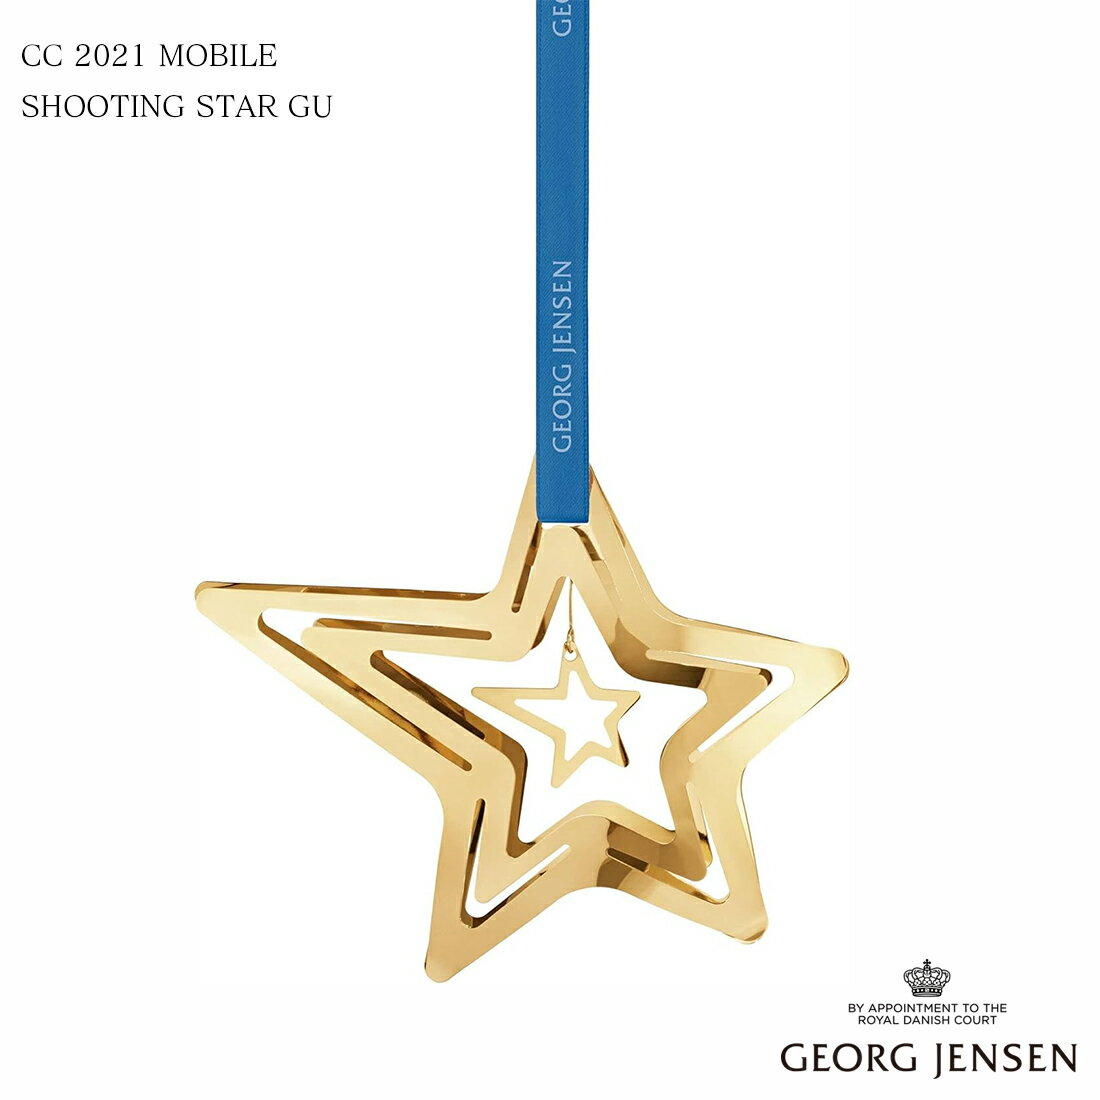 Georg Jensen ジョージジェンセン CC2021 MOBILE SHOOTING STAR GU クリスマス モビール シューティングスター 10019939